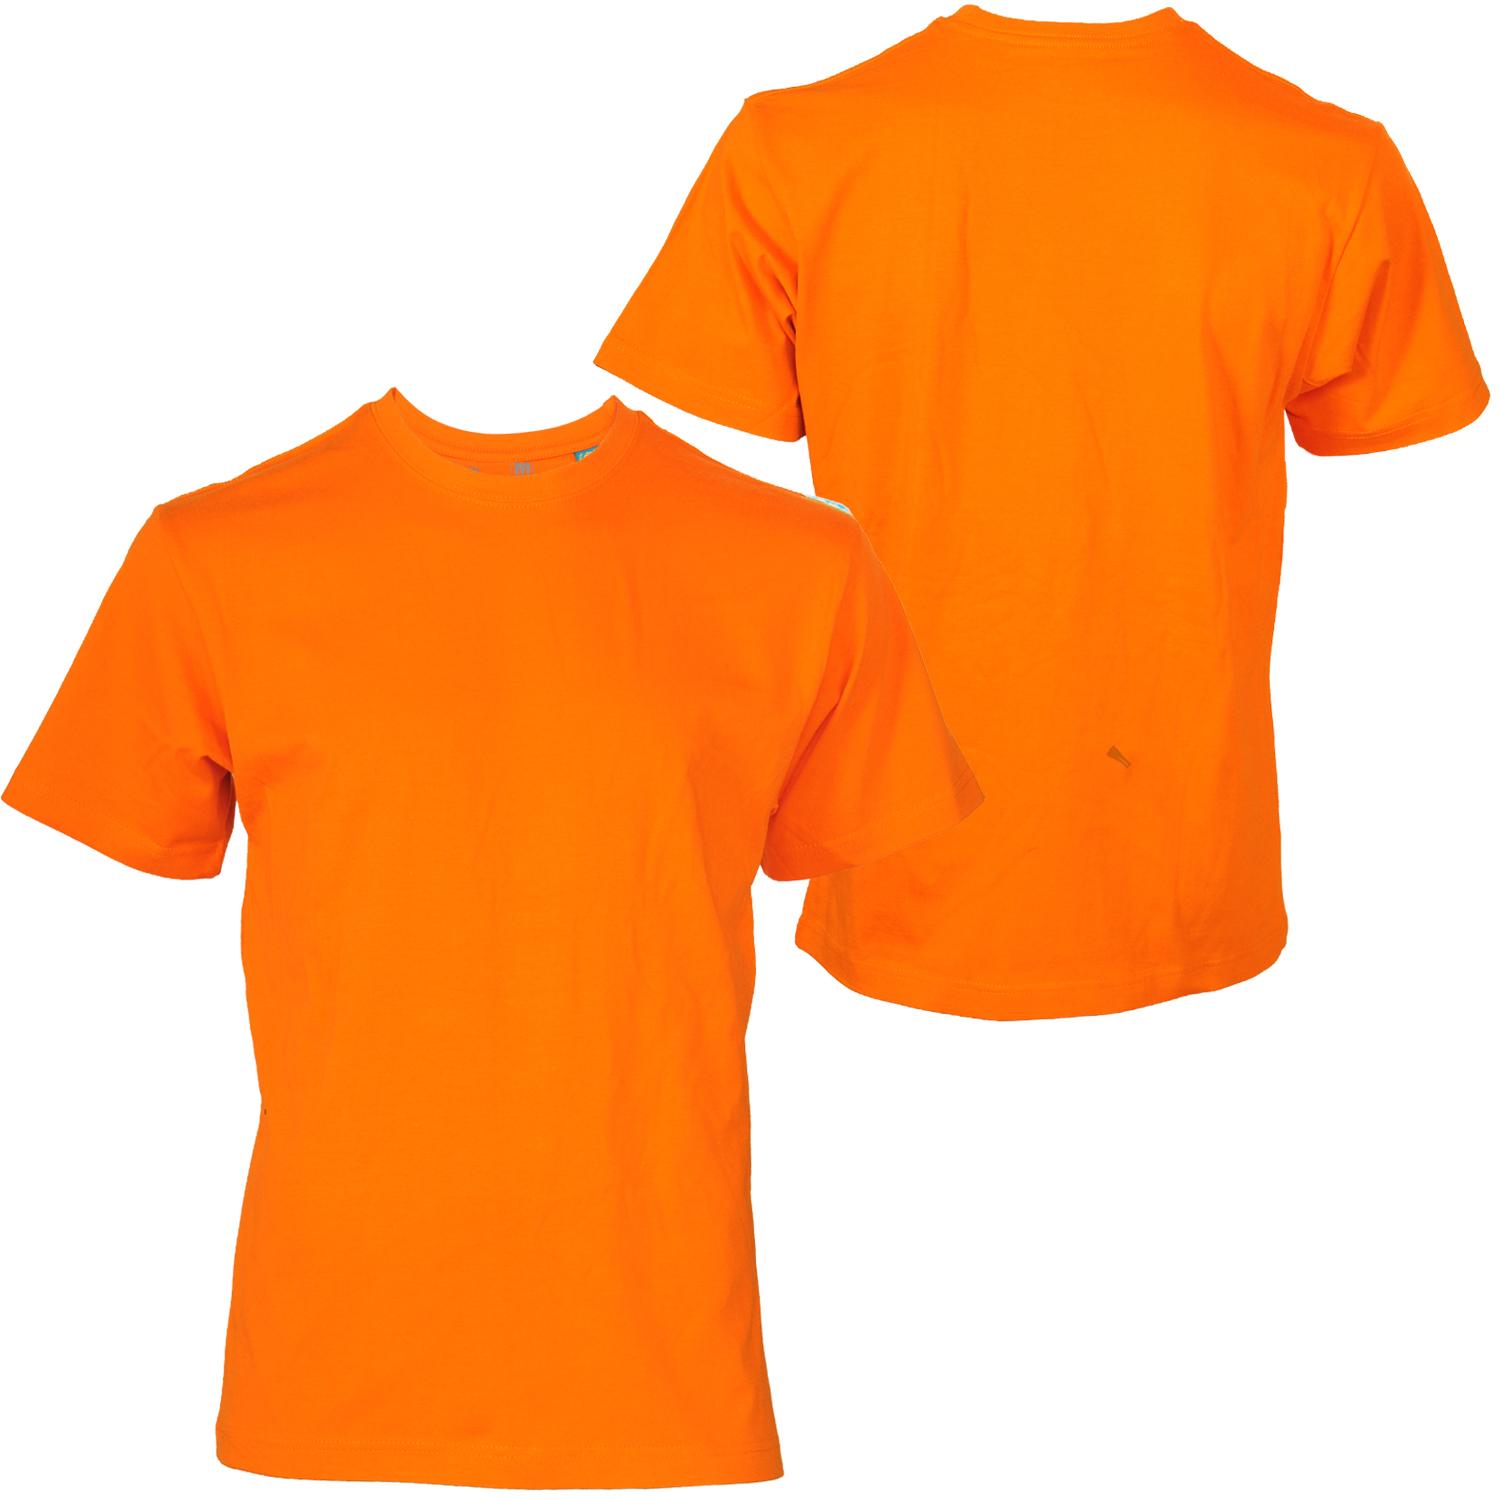 Foto Shmack Shmack Shmack Shmack Shmack Basic Blank T-shirt Orange Oran...